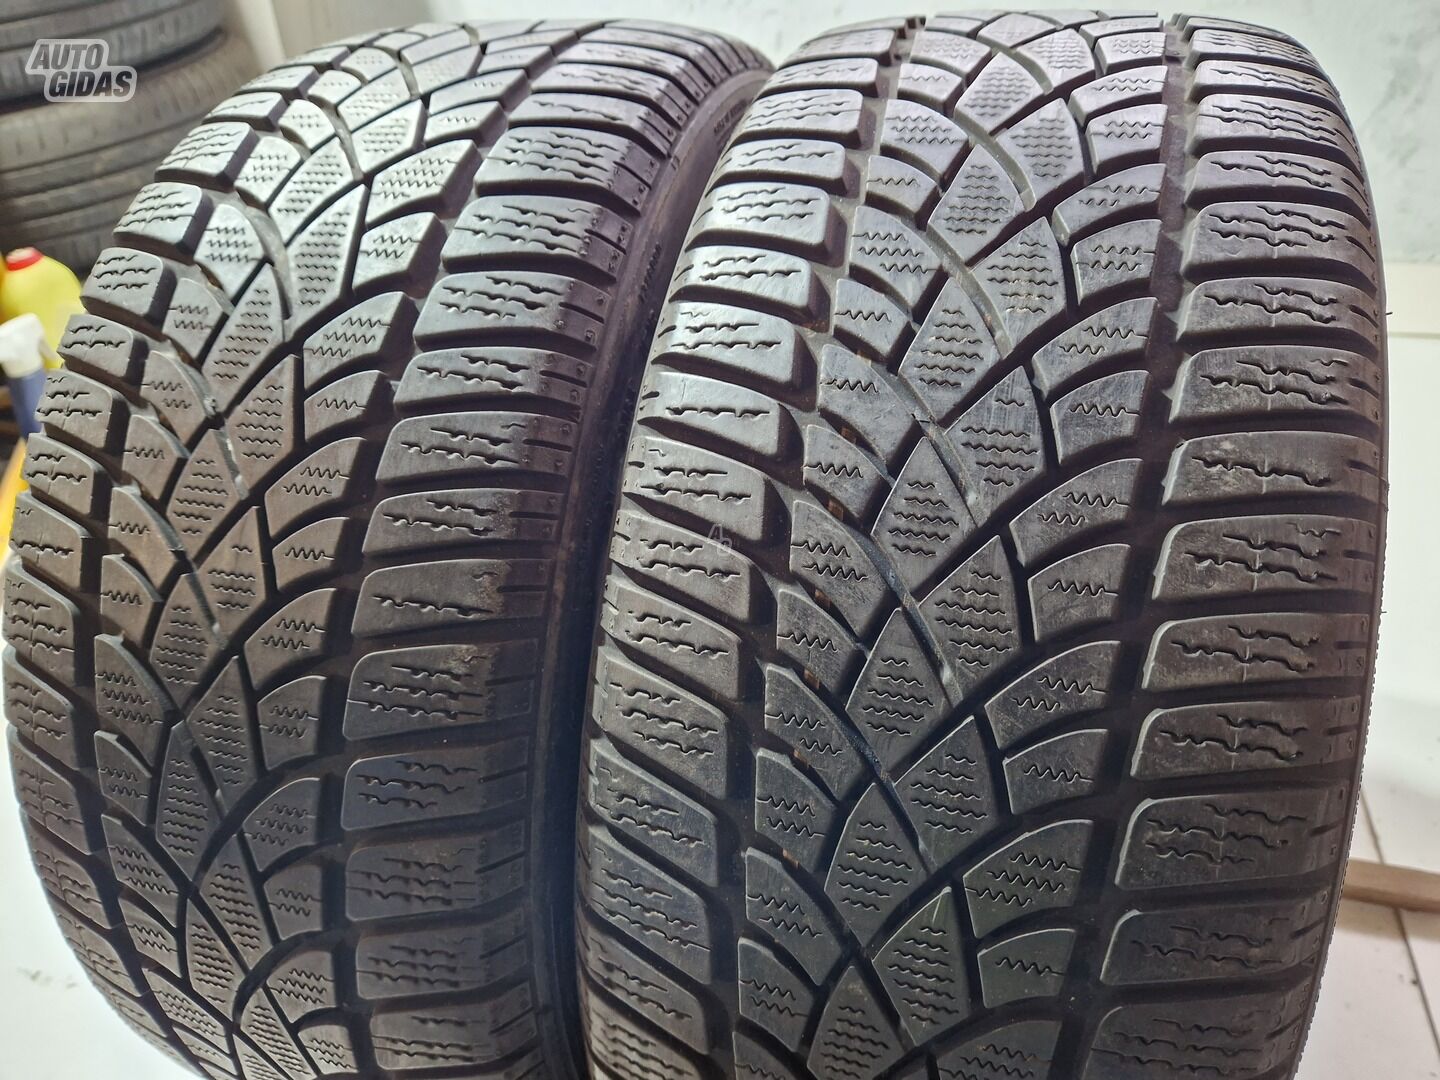 Dunlop 5-6mm R17 winter tyres passanger car